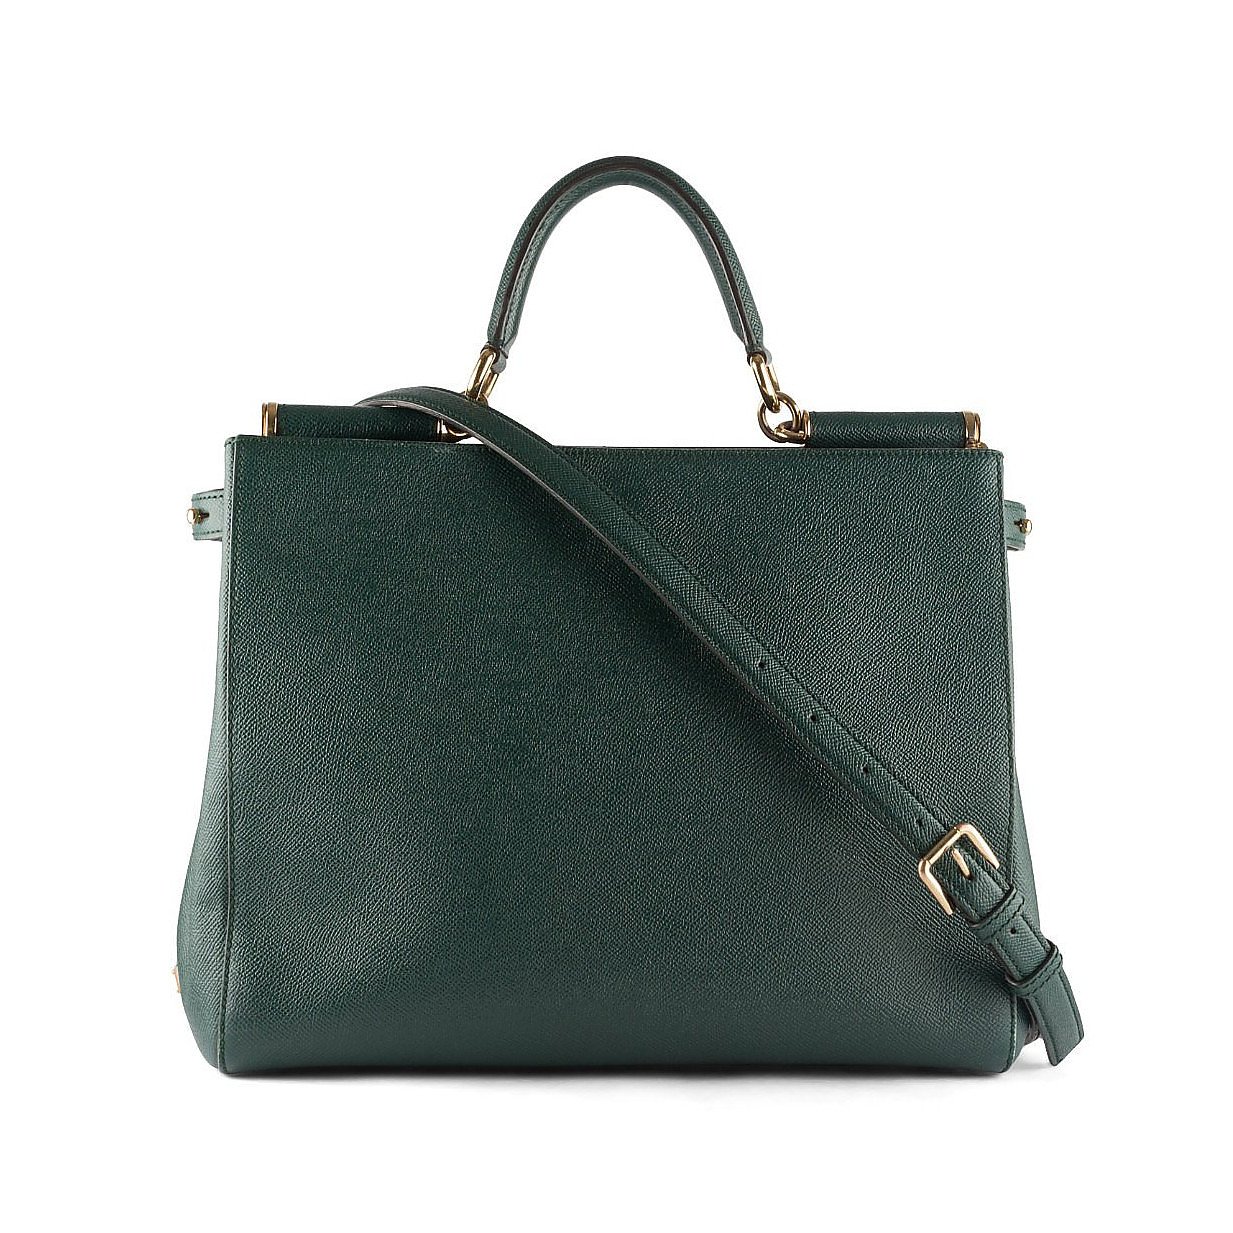 DOLCE & GABBANA Leather Handbag